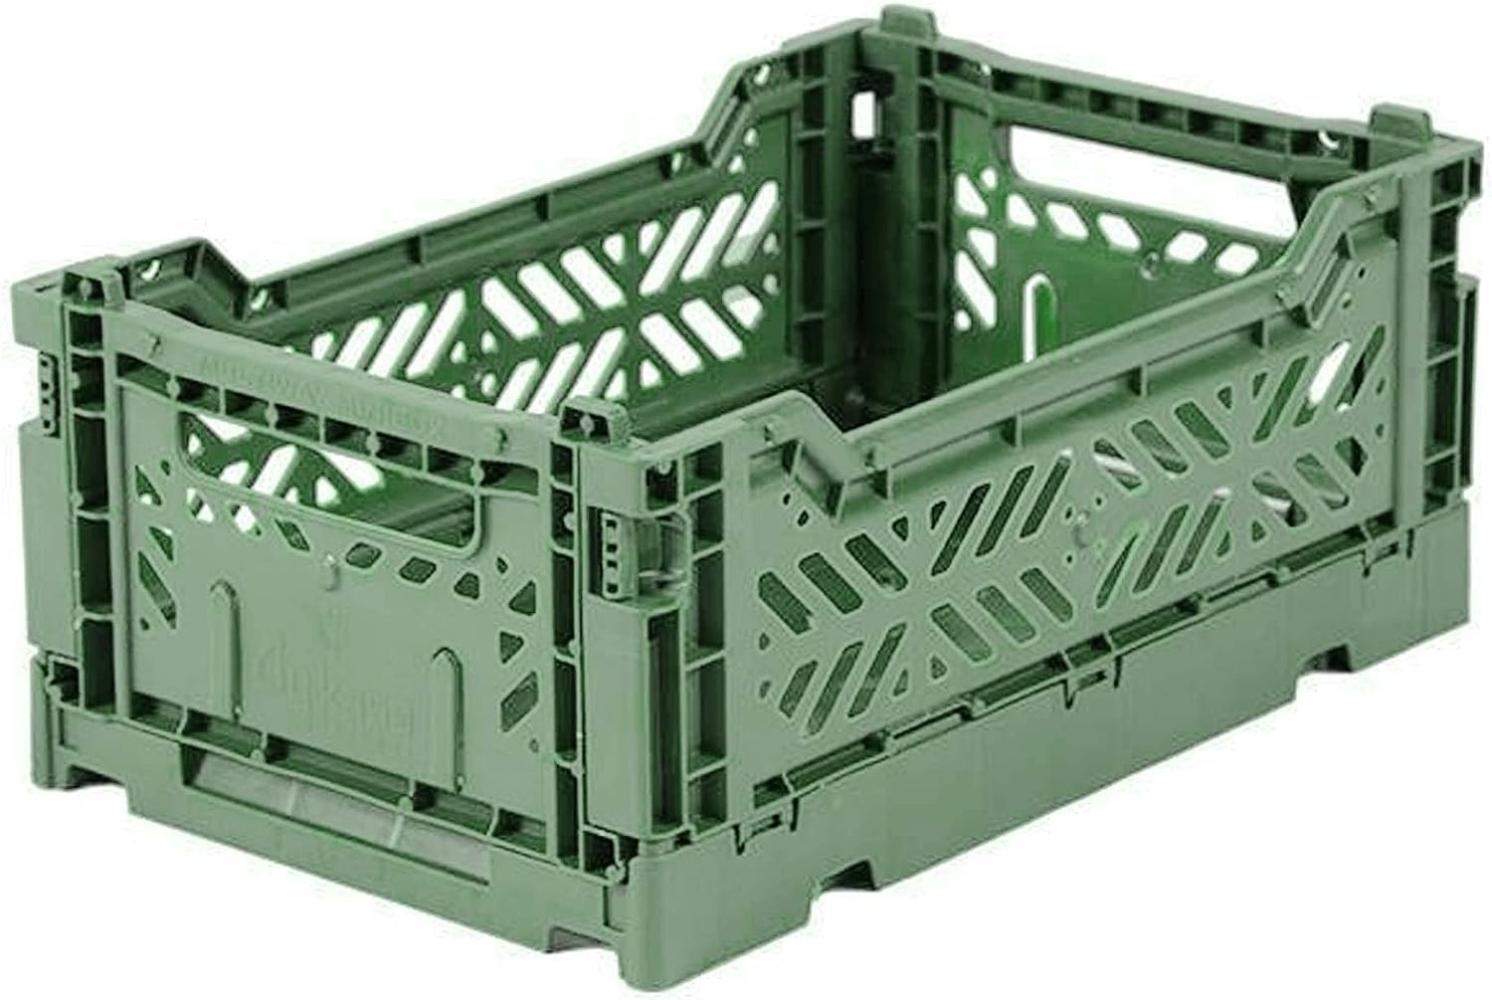 AY-KASA hellgrüne, Faltbare Aufbewahrungsbox mit 26,6x17,1x10,5 cm und 4 Liter Volumen - Bunte Klappbox zum Einkaufen und Aufbewahren - Stabile Faltbox aus Plastik - Organizer Box Bild 1